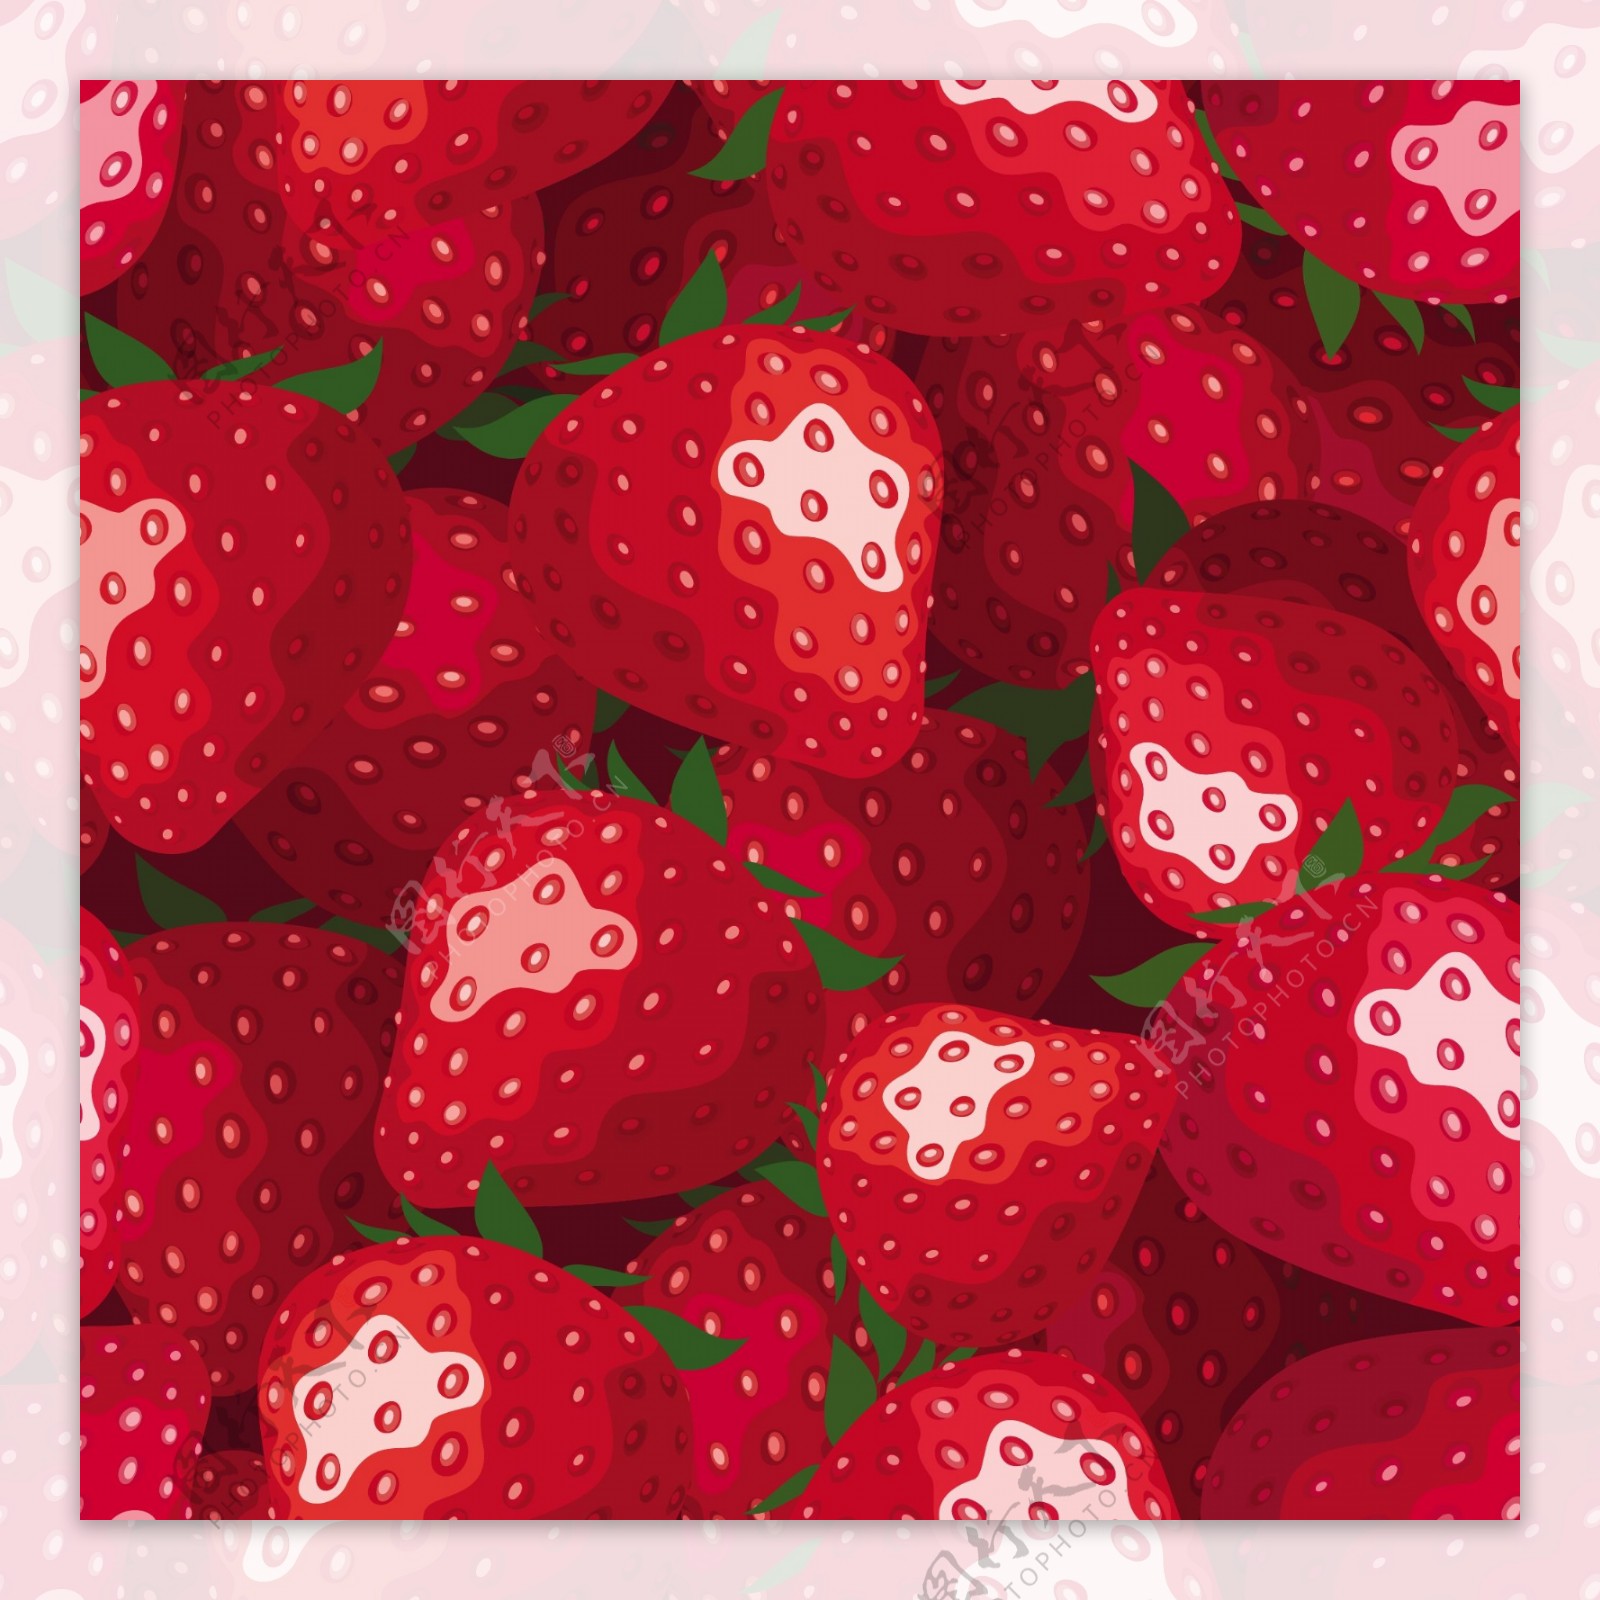 创意草莓无缝背景矢量素材